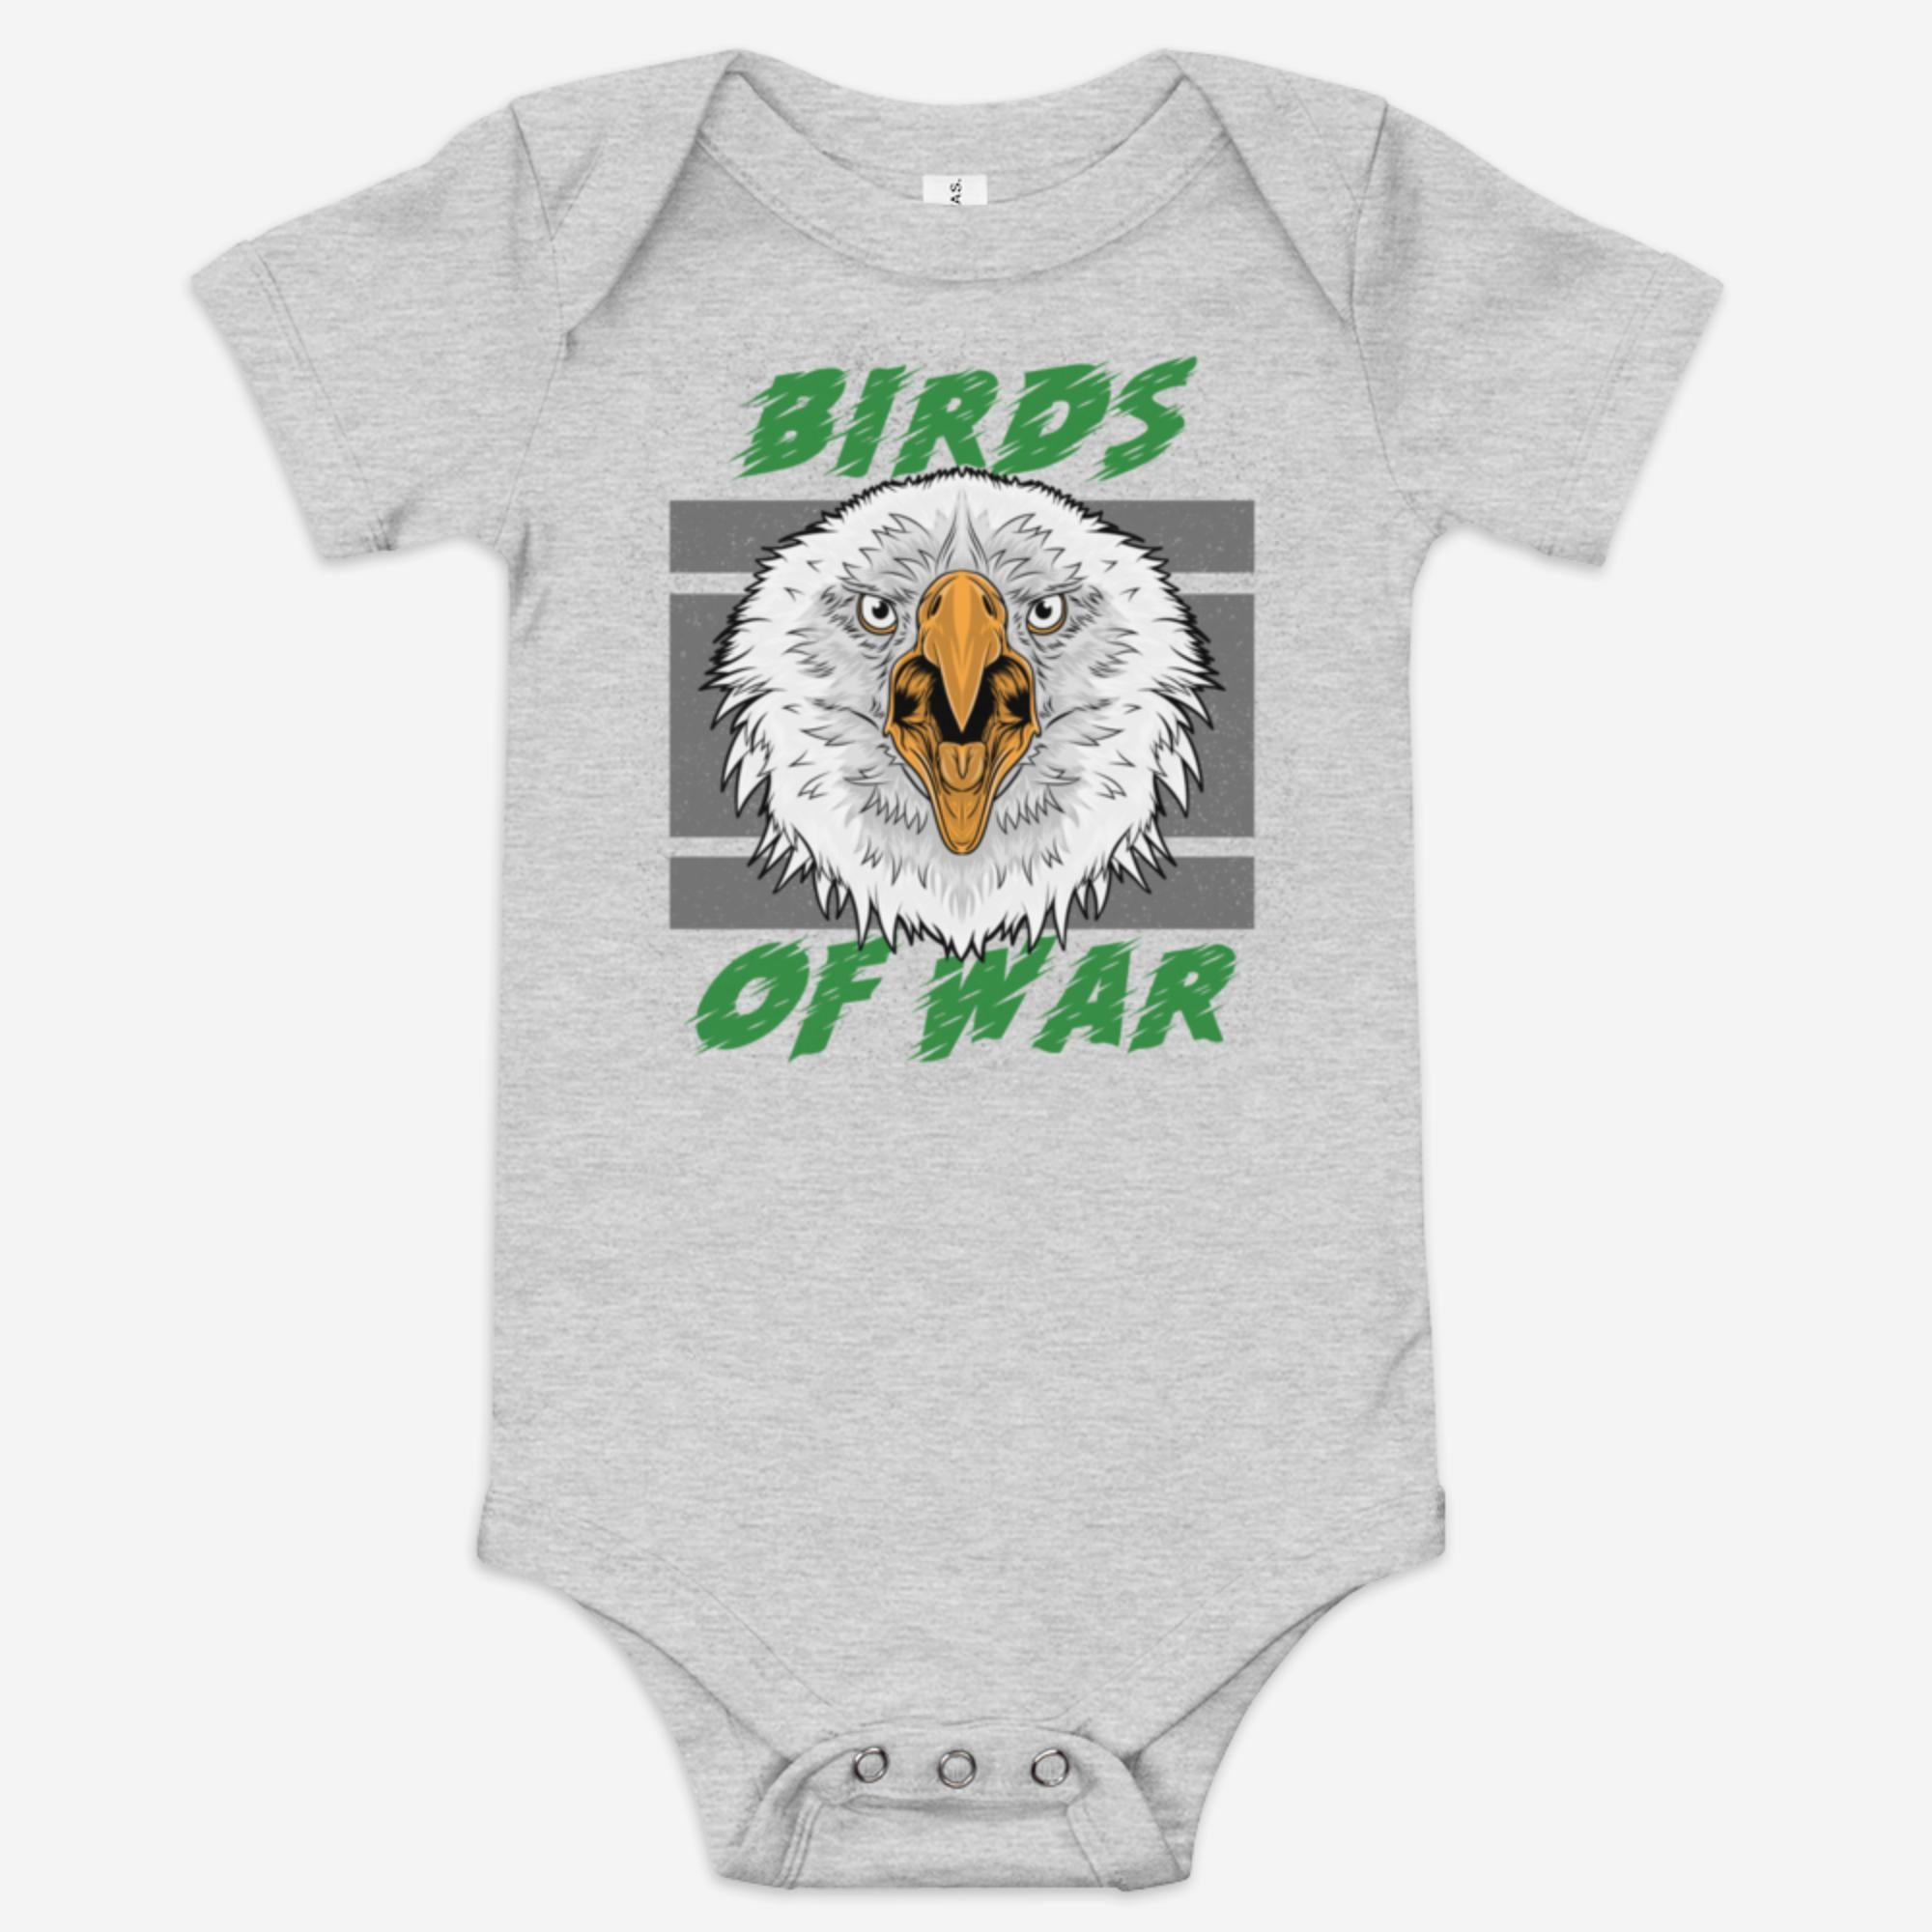 "Birds of War" Baby Onesie